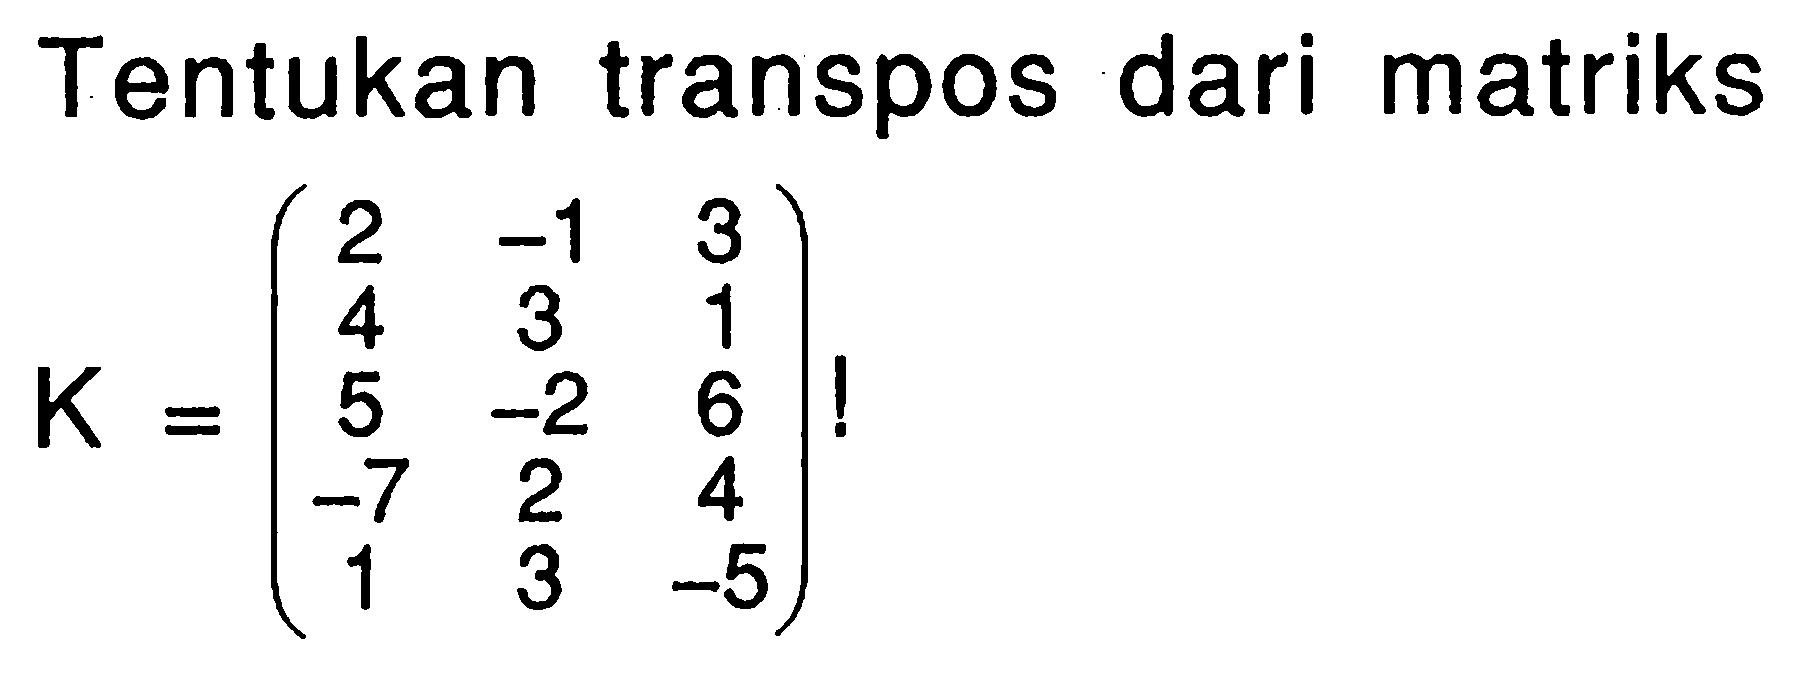 Tentukan transpos dari matriks K=(2 -1 3 4 3 1 5 -2 6 -7 2 4 1 3 -5)!